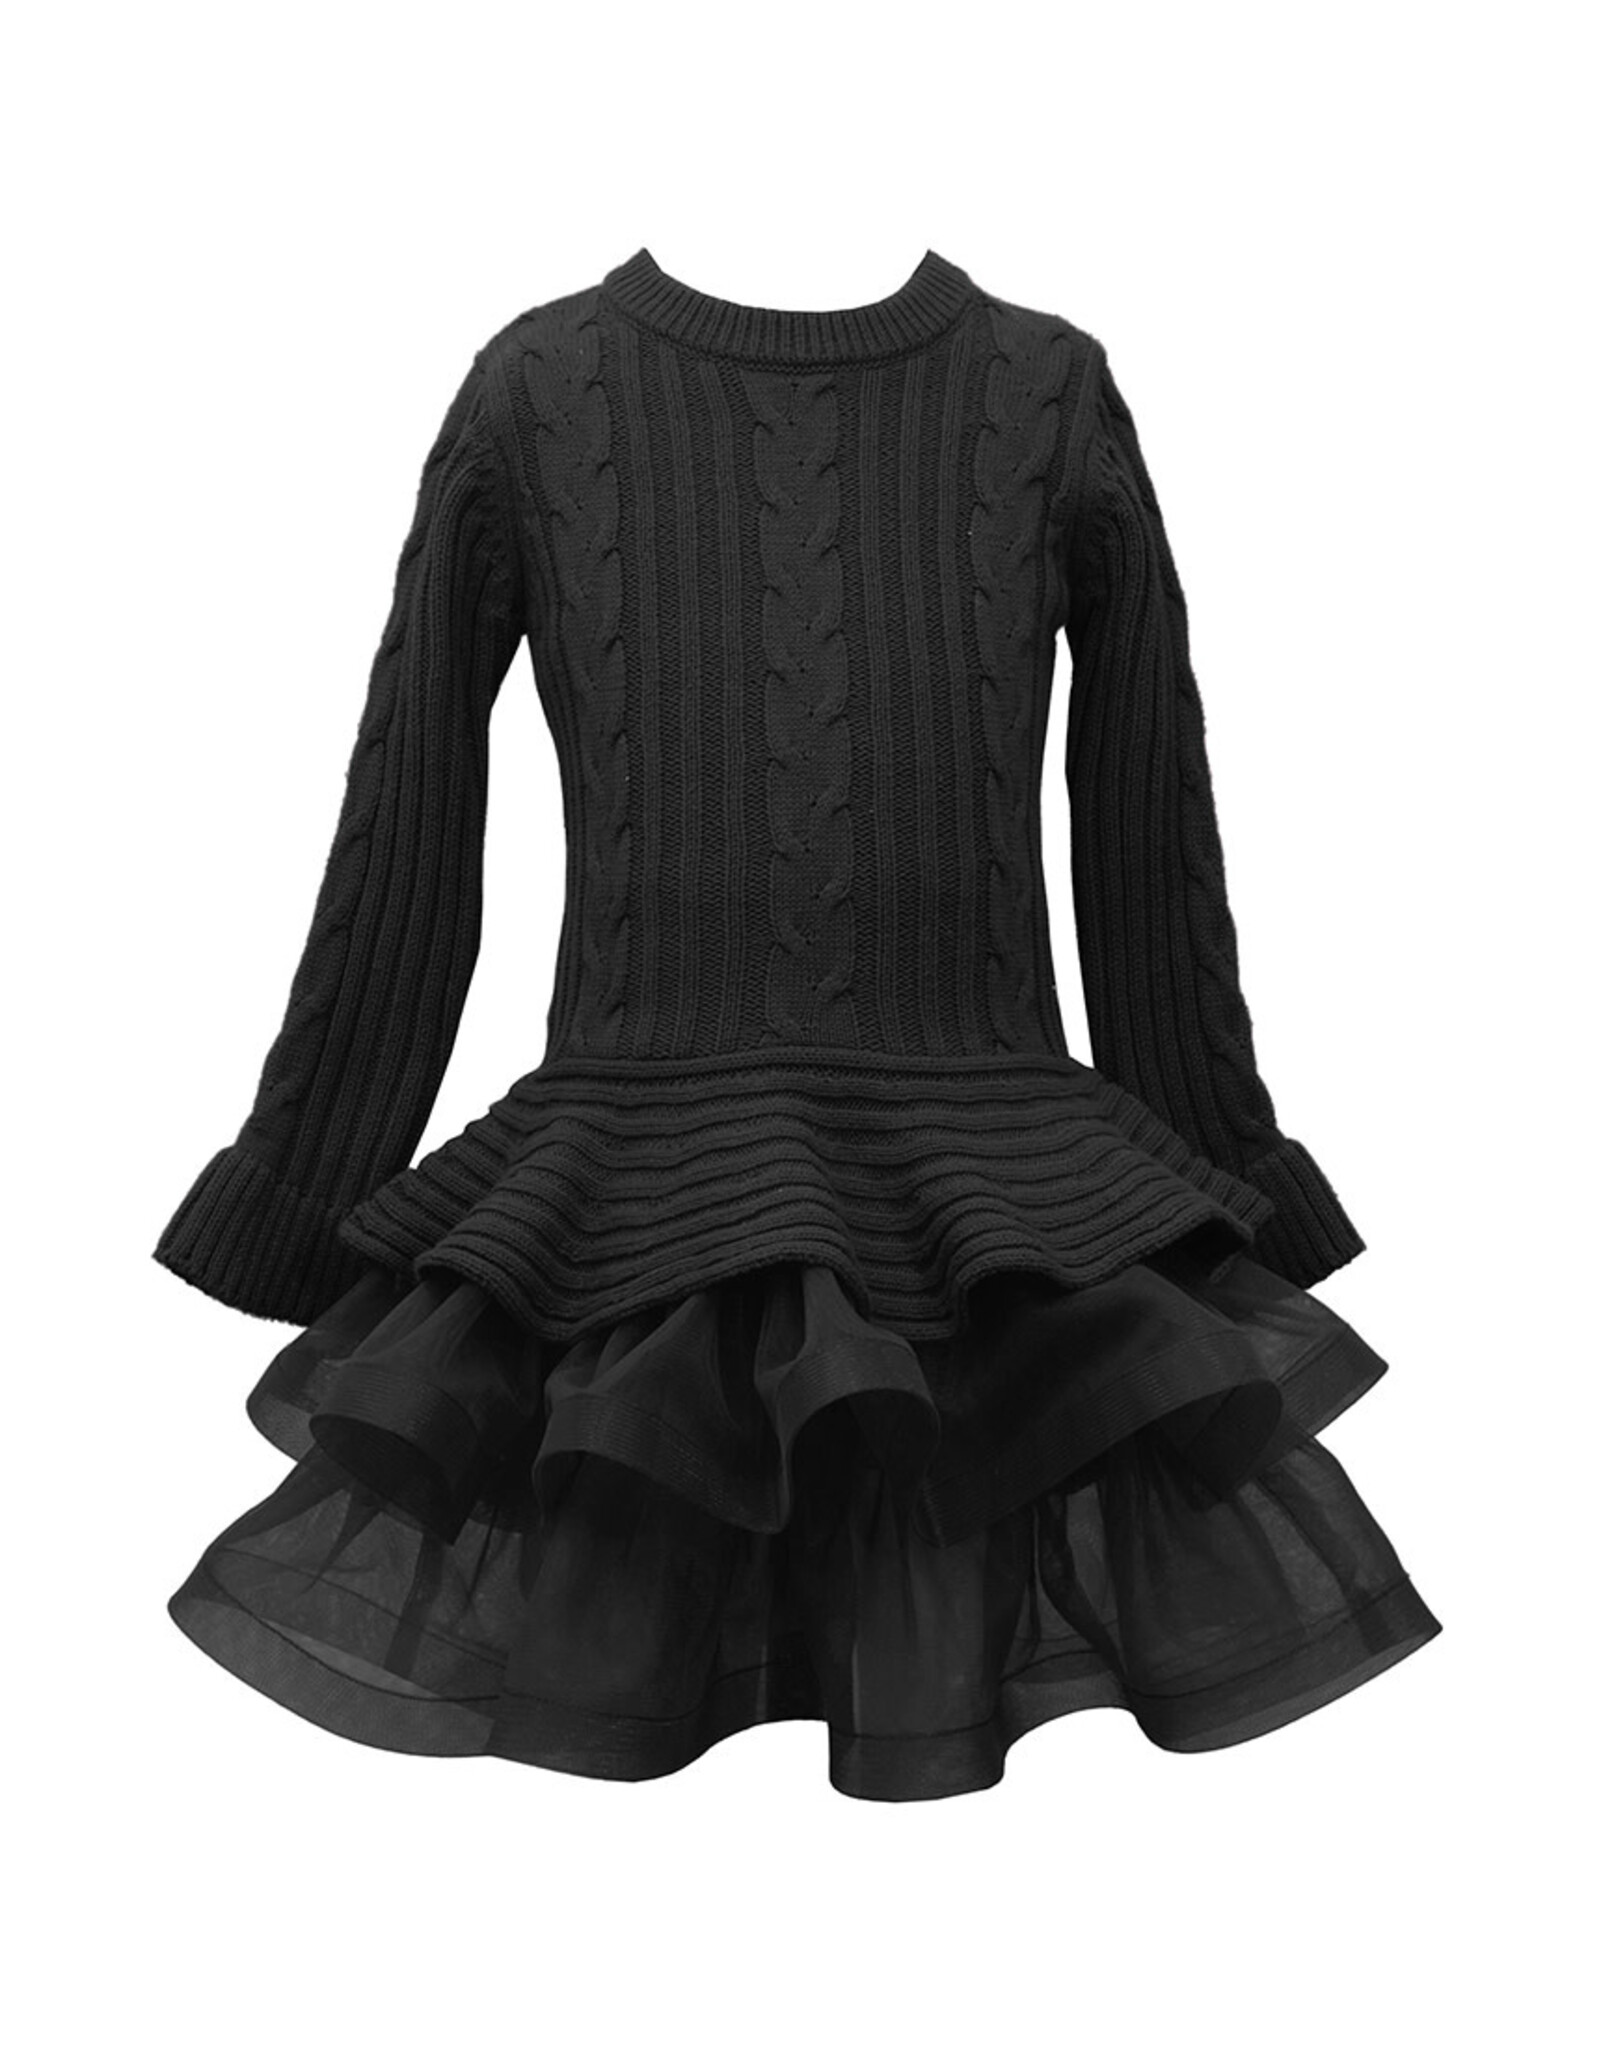 Bonnie  Jean Bonnie Jean- Black Cableknit Skirt Sweater Dress